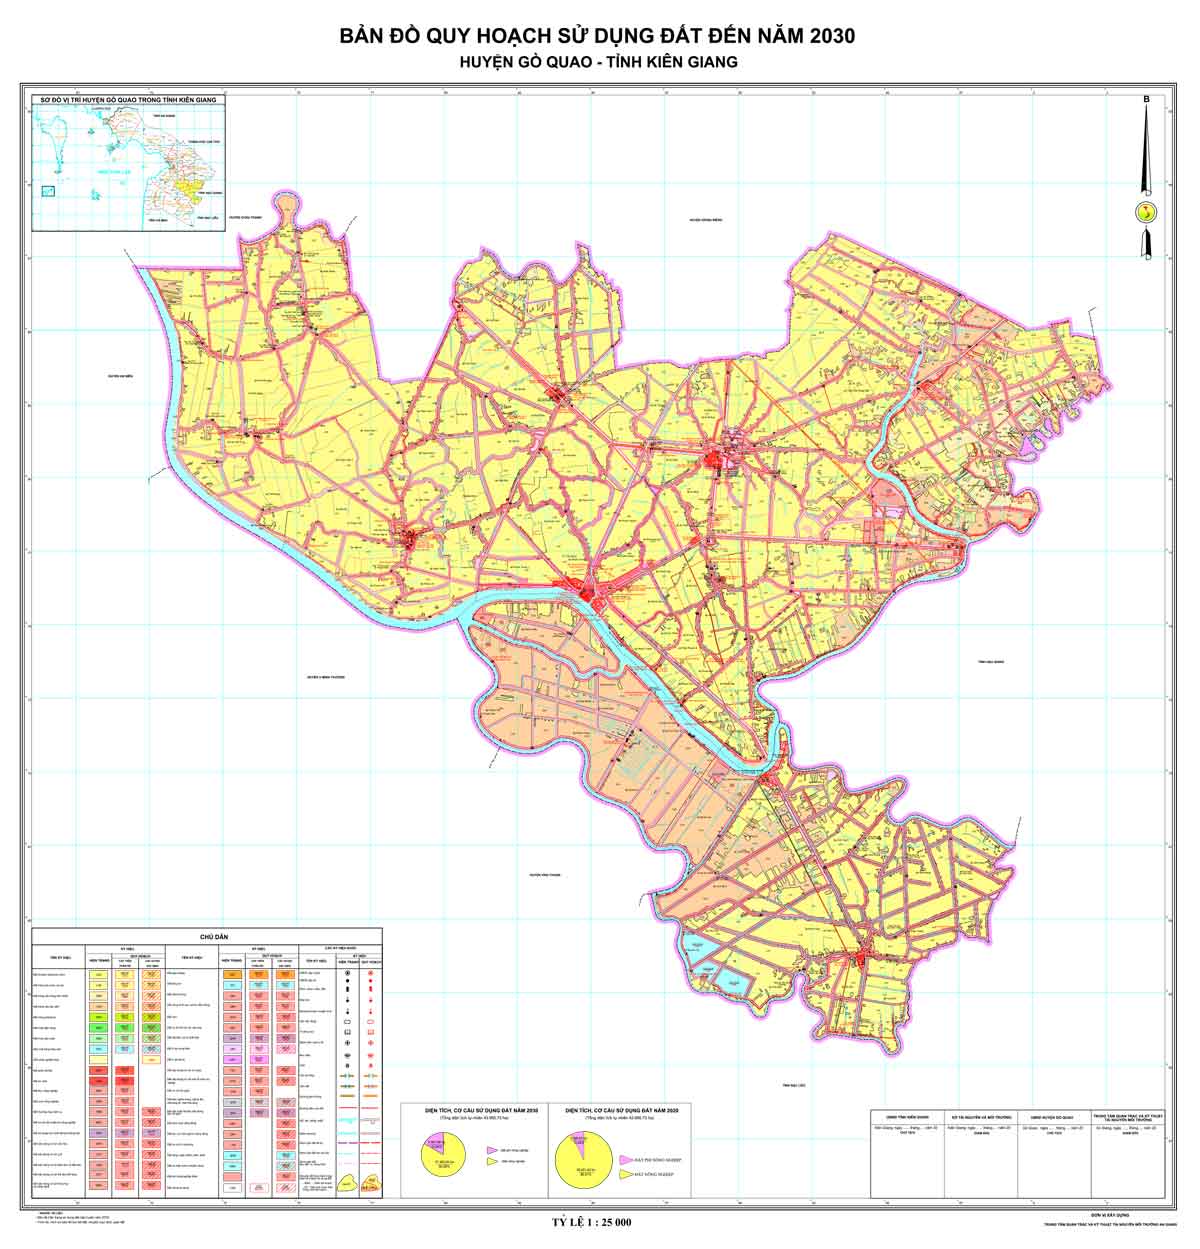 Bản đồ QHSDĐ huyện Gò Quao đến năm 2030